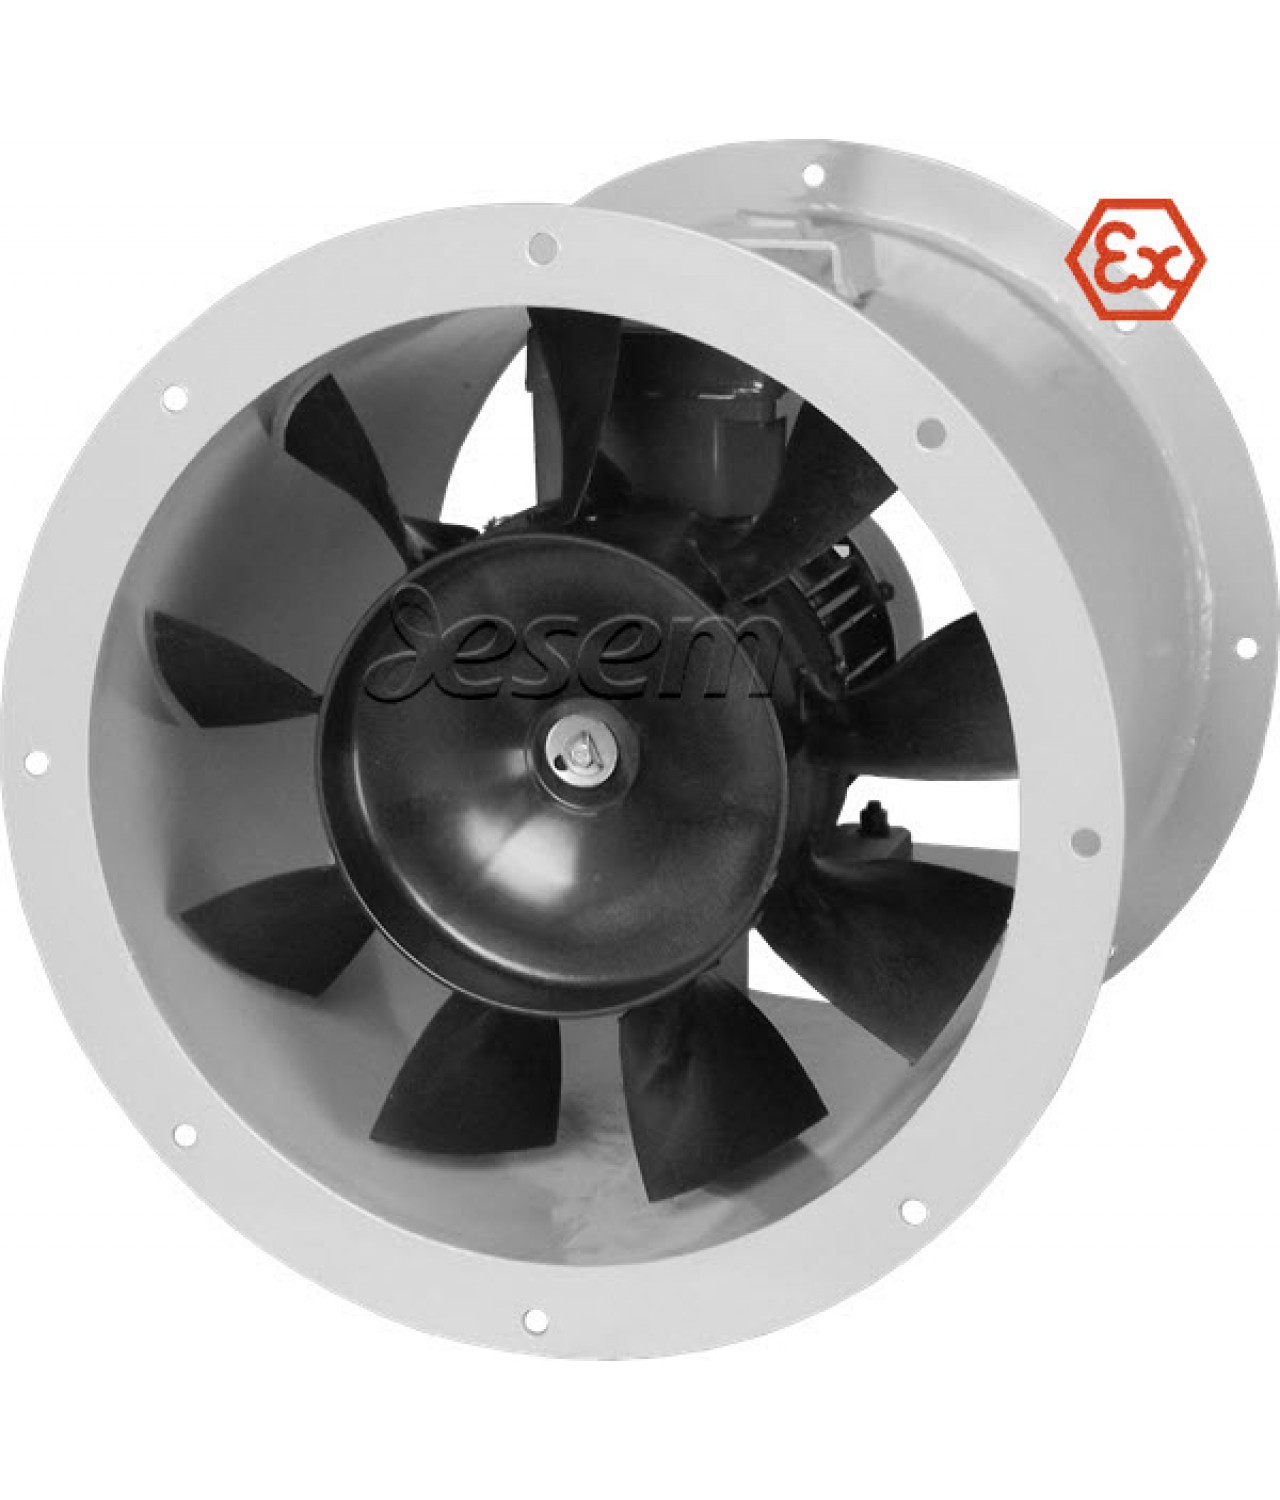 Sprogimui saugūs ašiniai kanaliniai ventiliatoriai AVWOKE EX ≤46400 m³/h